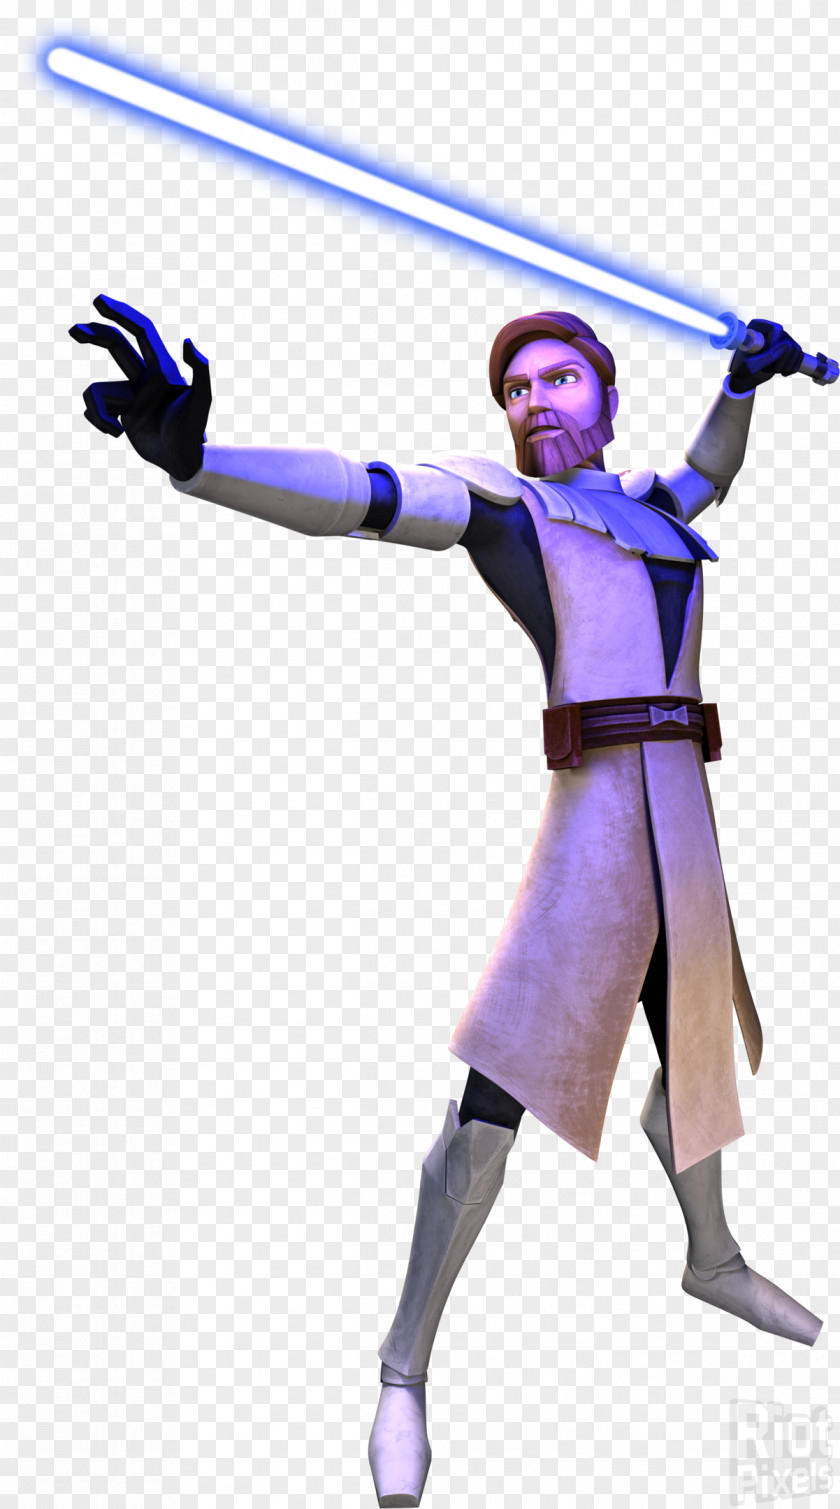 General Obi-Wan Kenobi Star Wars: The Clone Wars R2-D2 Mace Windu PNG